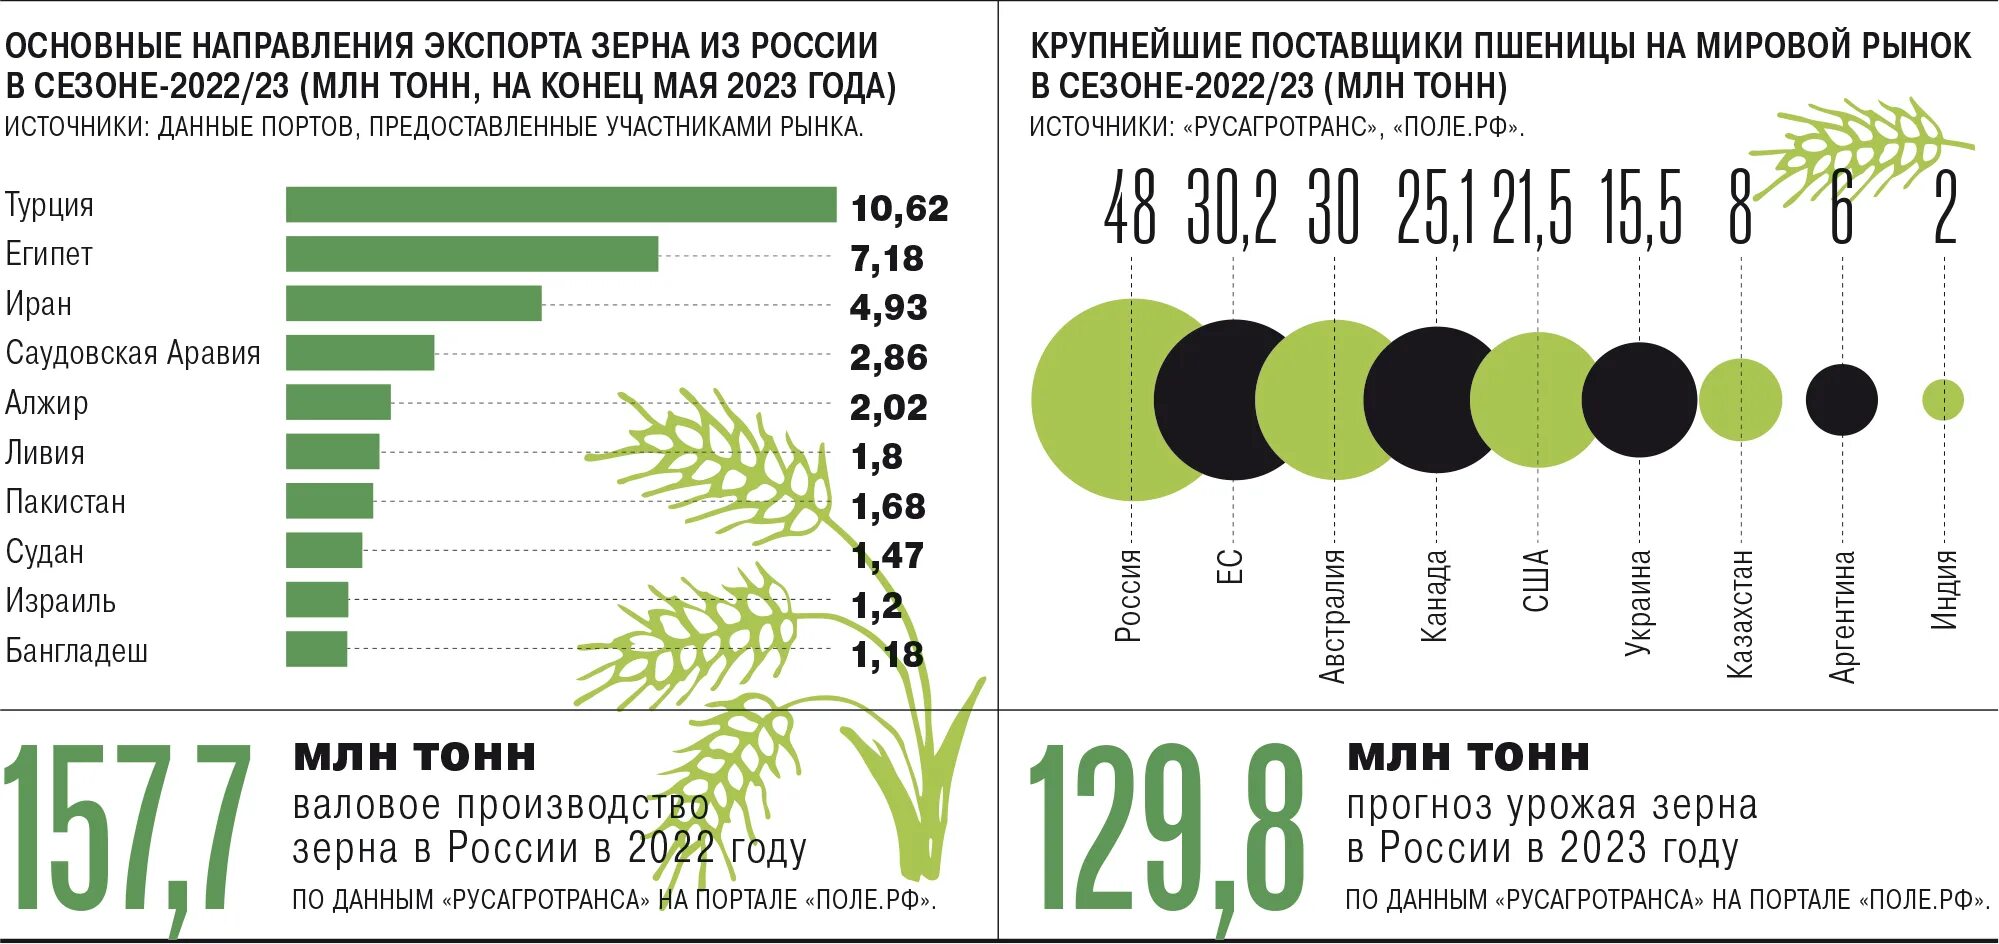 Россия экспортирует зерно. Экспорт пшеницы. Мировой рынок зерна. Крупнейшие импортеры пшеницы. Экспорт пшеницы из России.